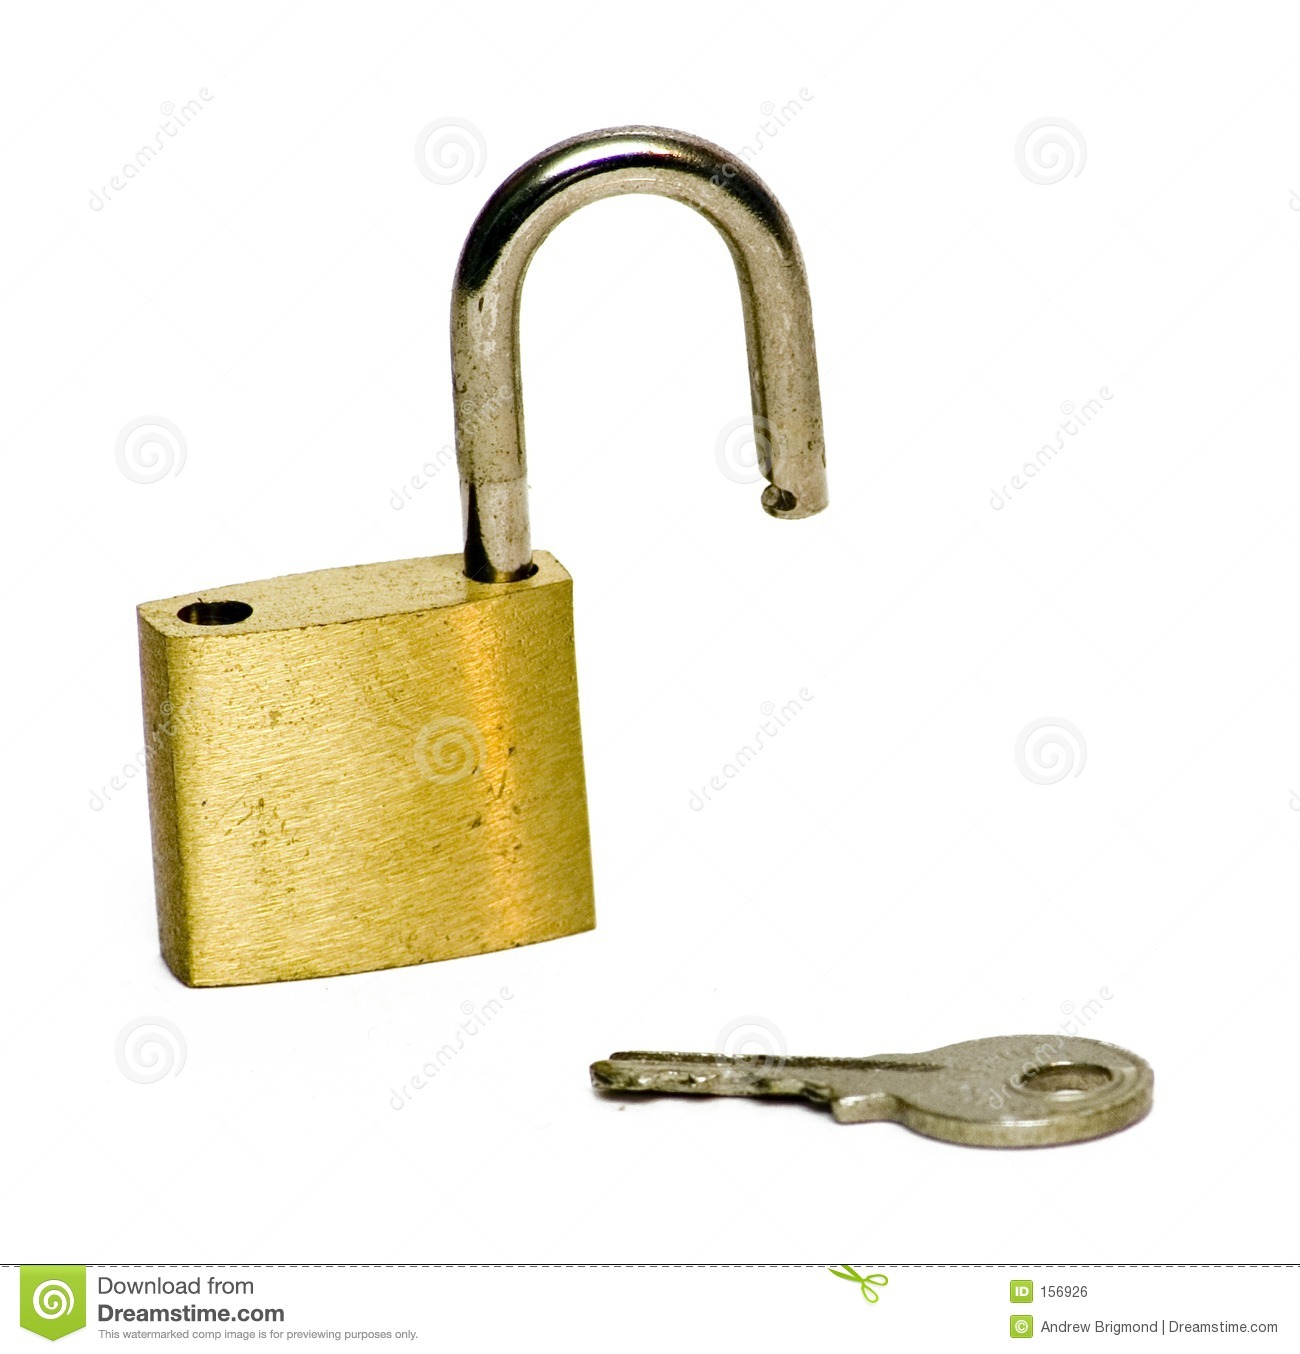 Lock And Key  Unlocked  Royalty Free Stock Image   Image  156926